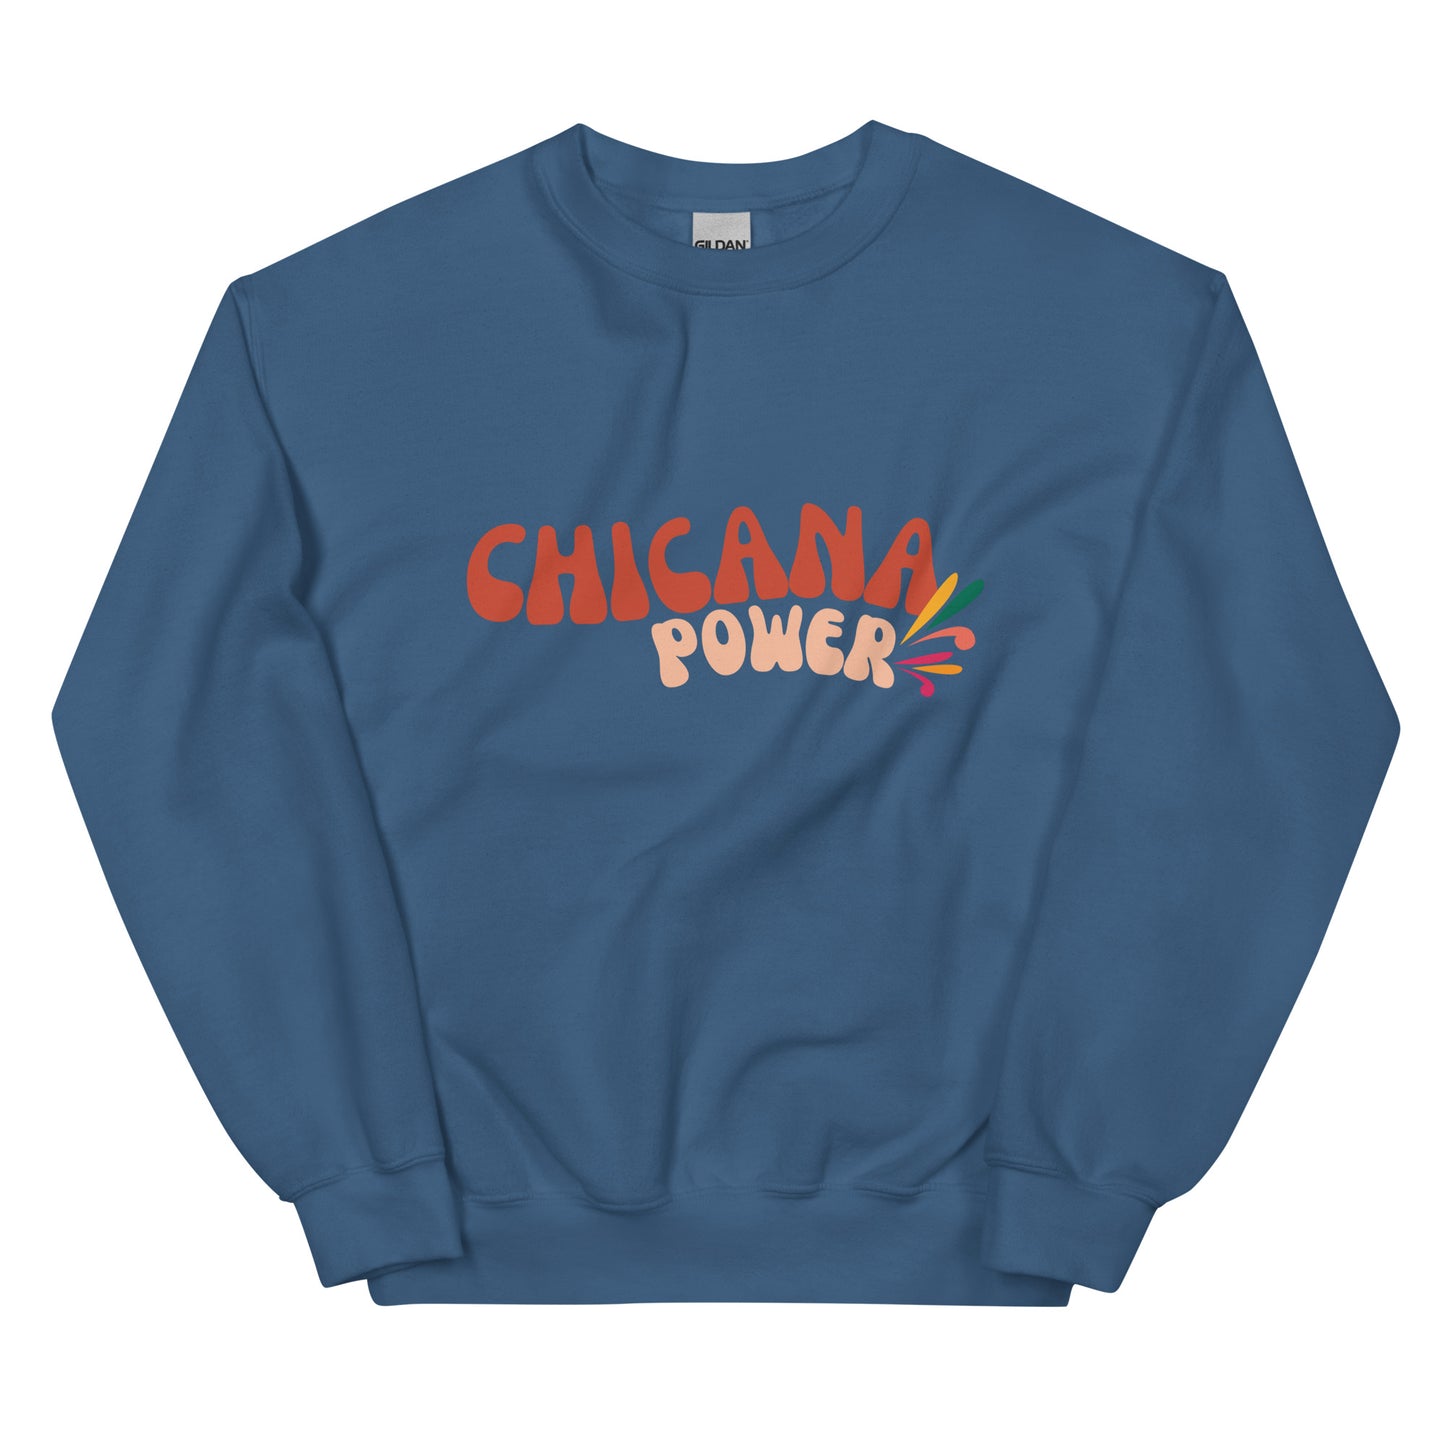 Chicana Power Unisex Sweatshirt